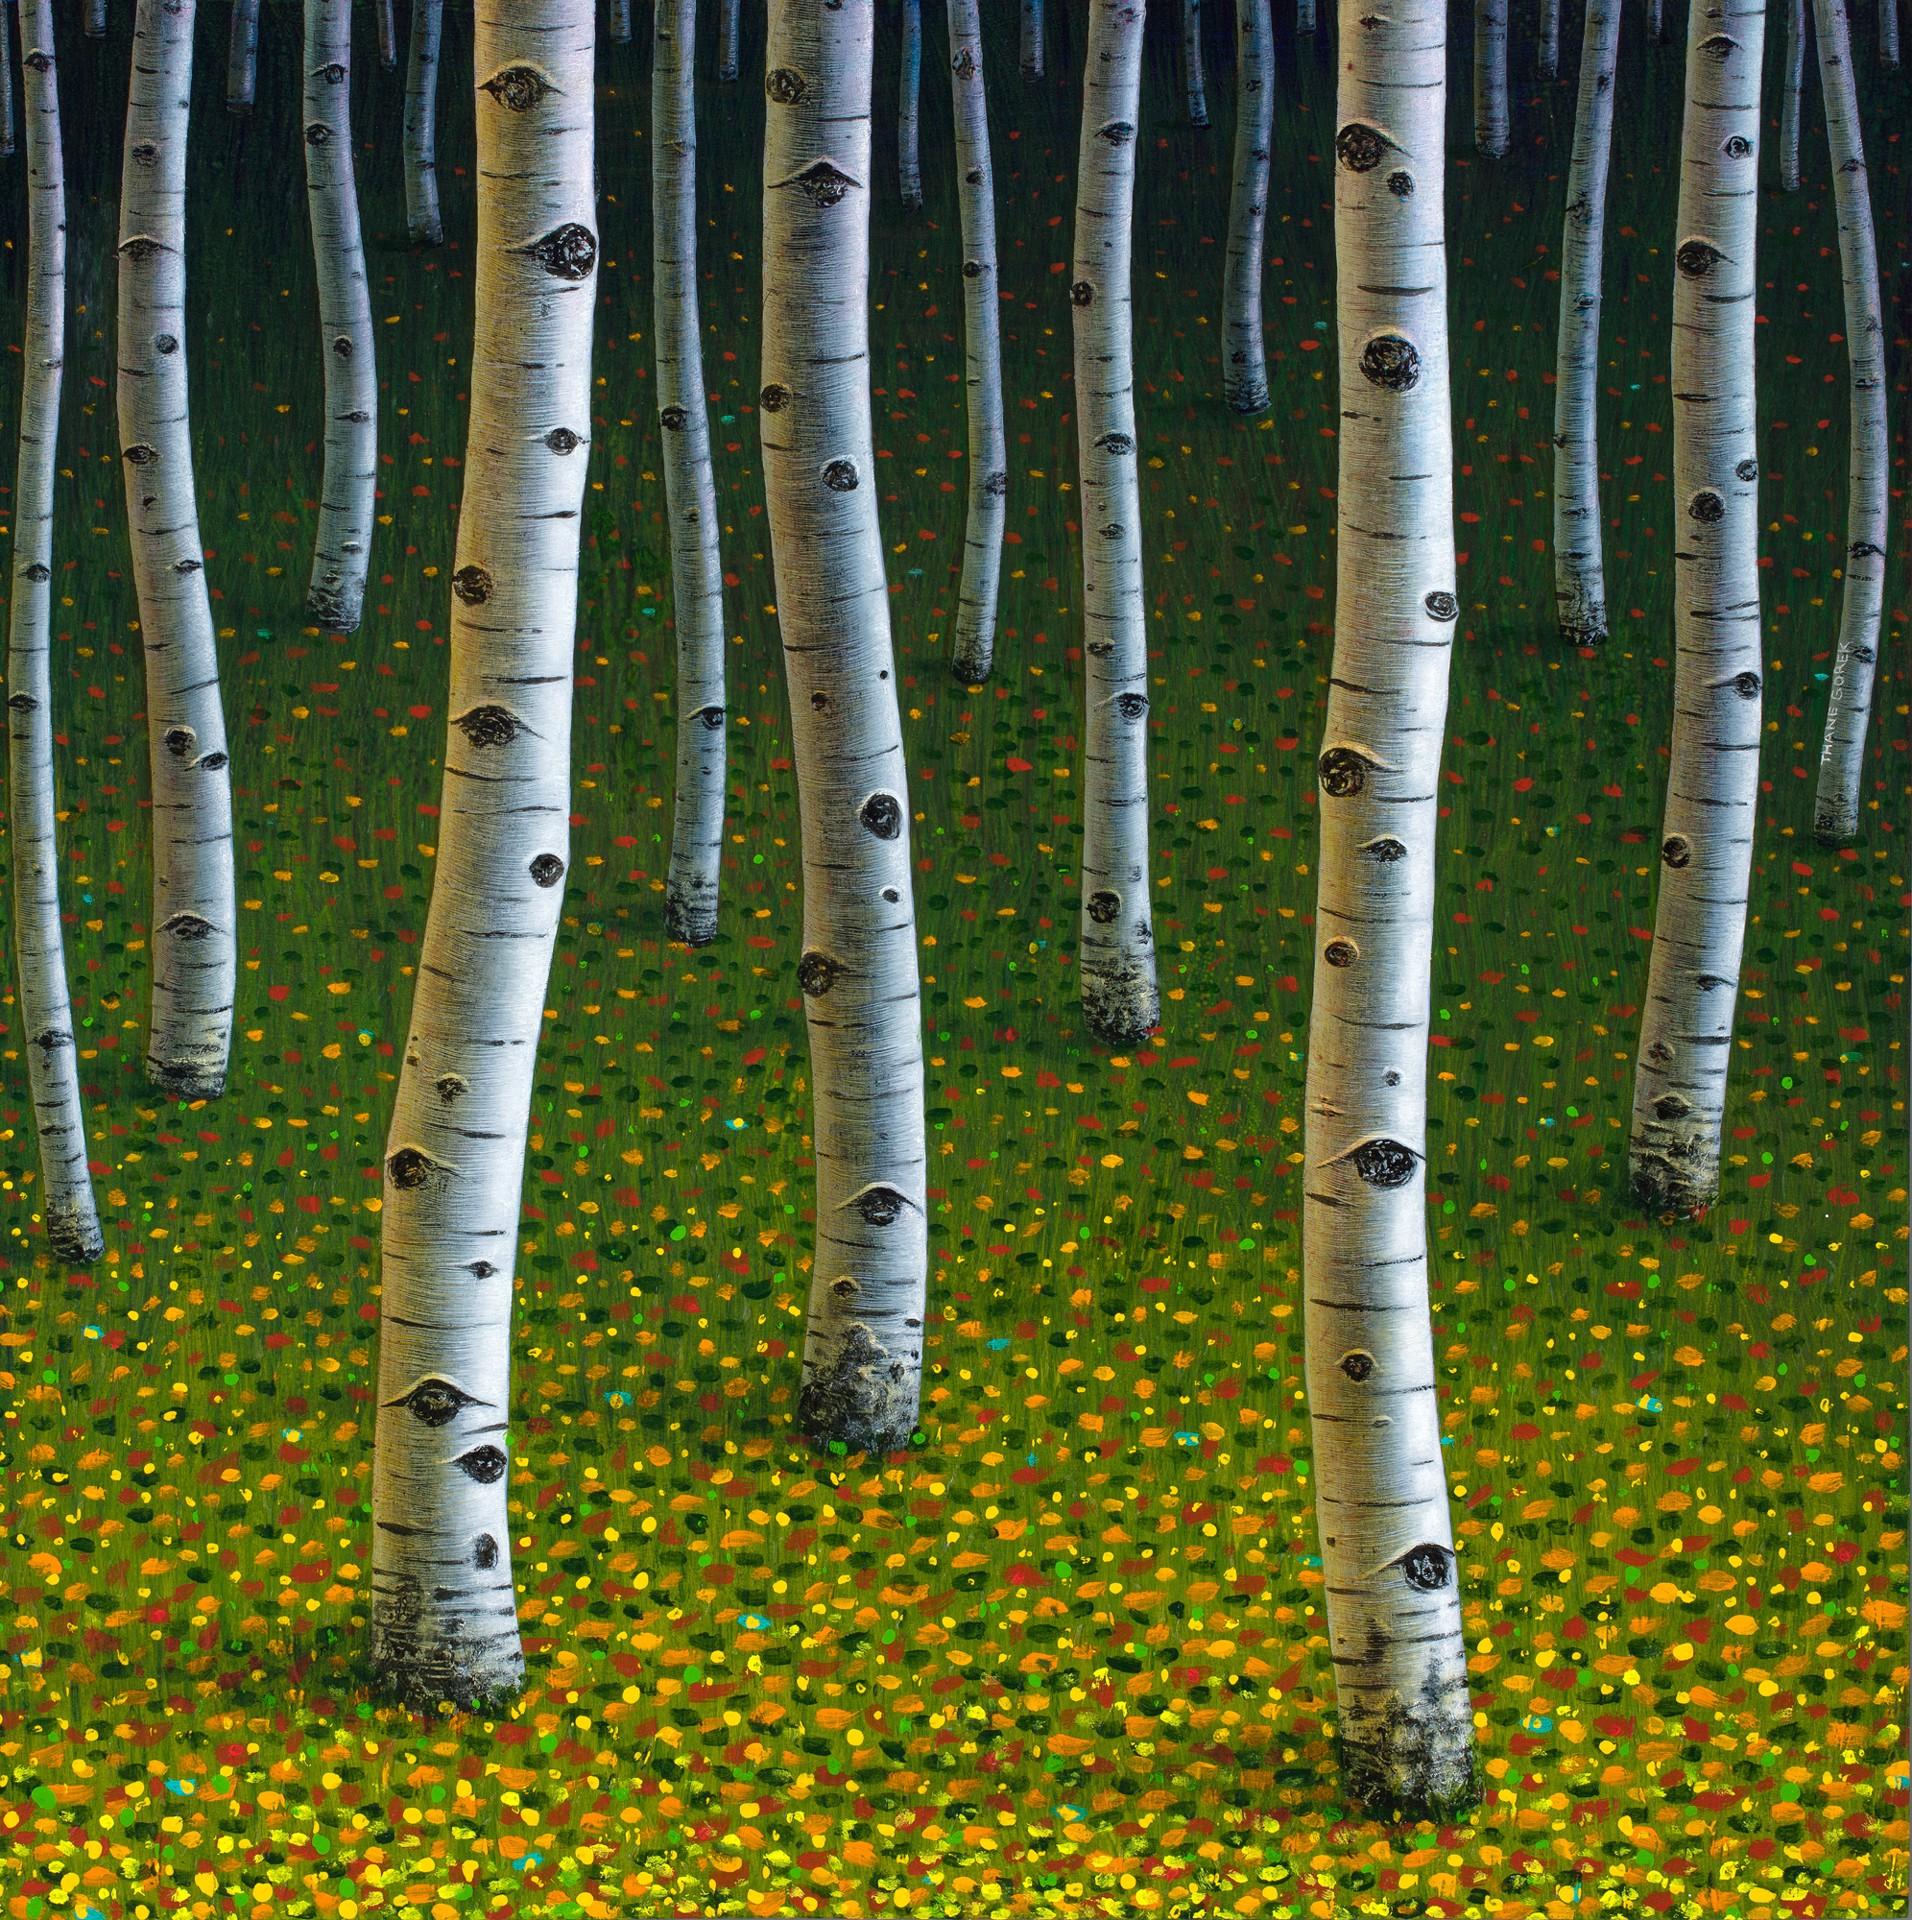 Thane Gorek Landscape Painting - The Darkening Wood